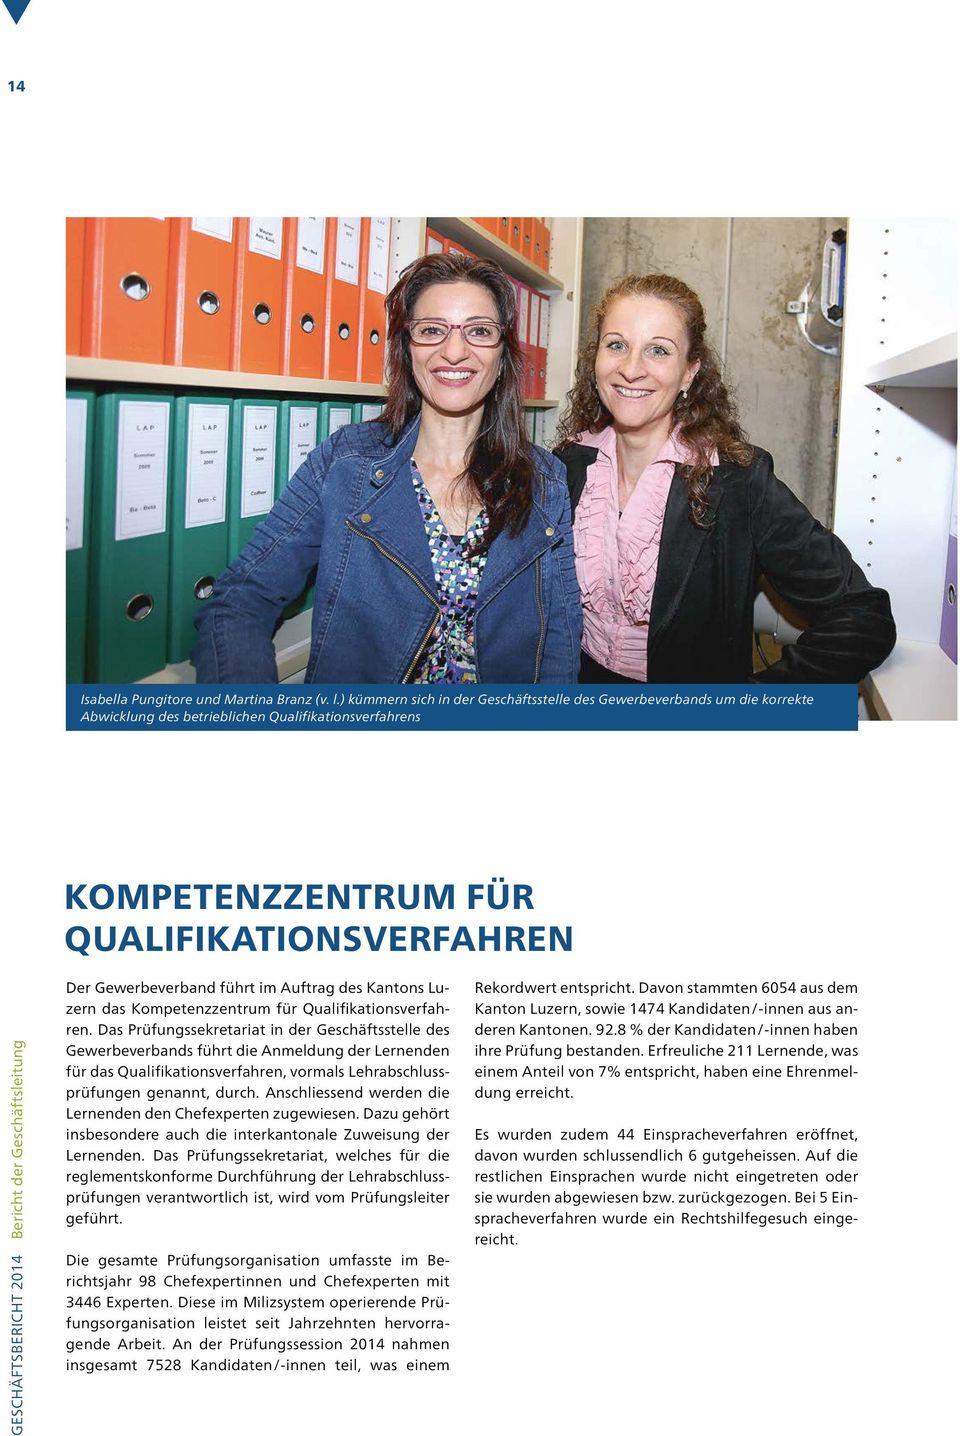 Bericht der Geschäftsleitung Der Gewerbeverband führt im Auftrag des Kantons Luzern das Kompetenzzentrum für Qualifikationsverfahren.